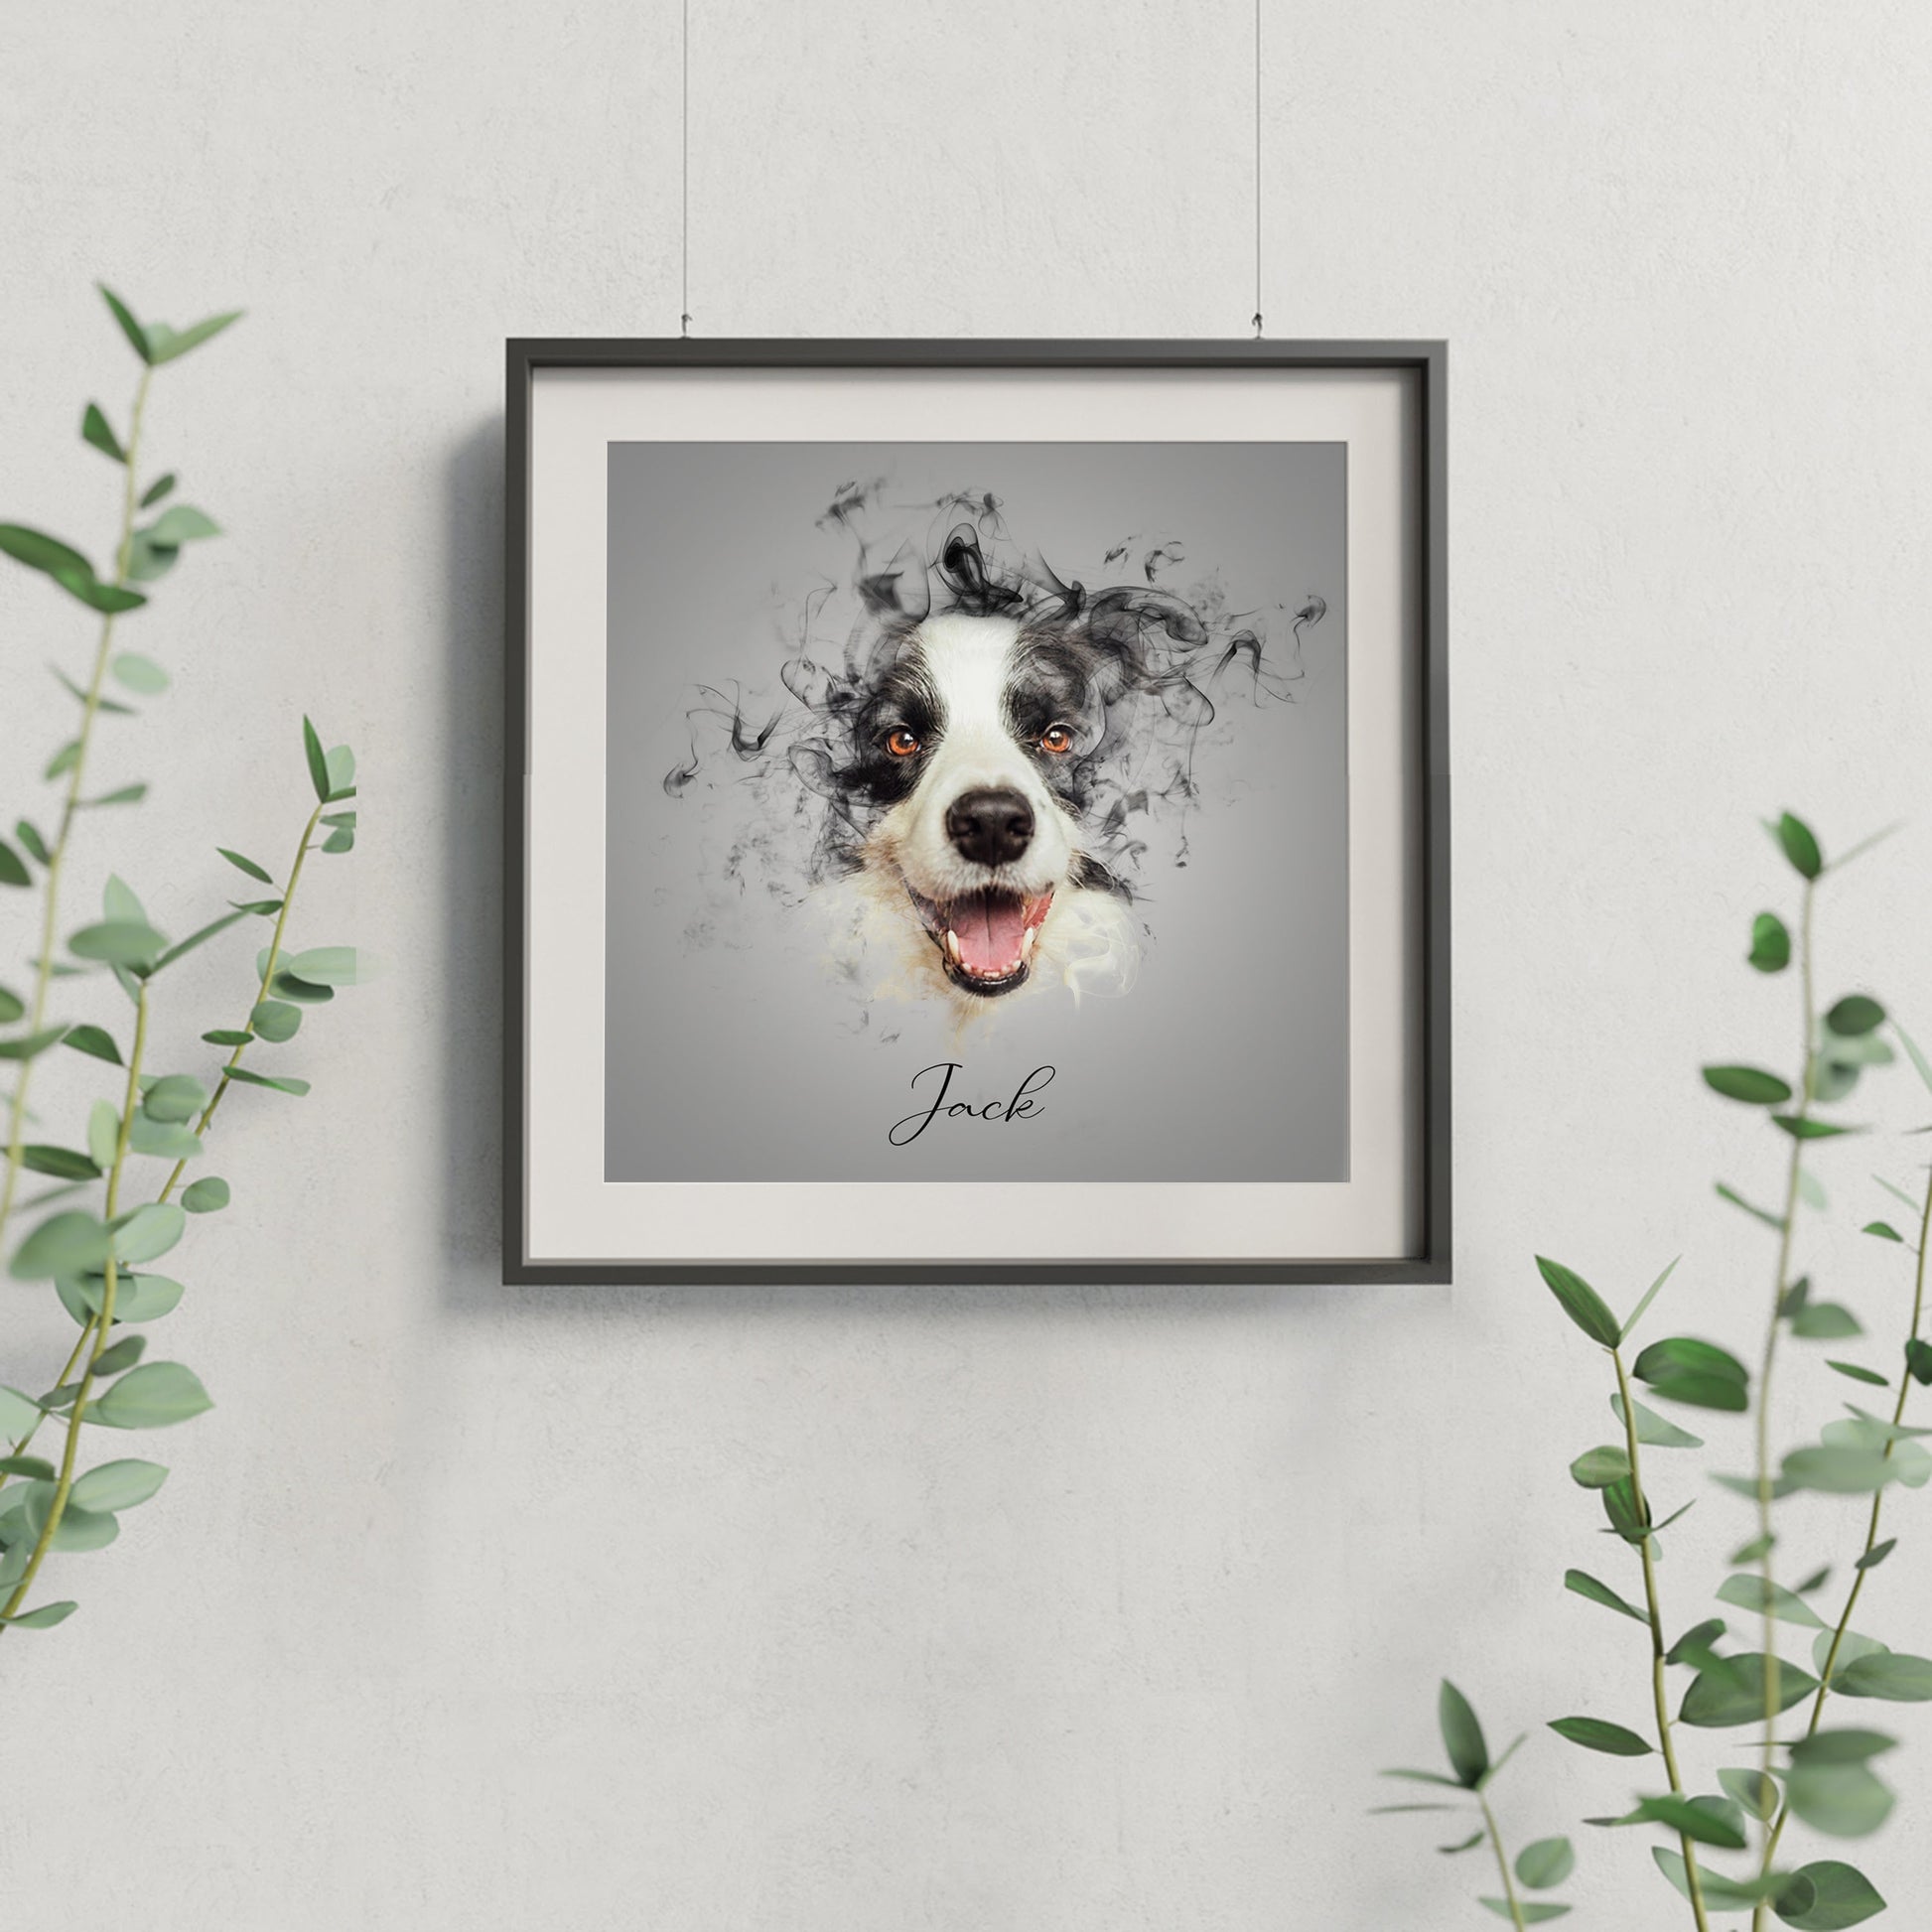  Personalized pet portrait painting - immortalize your furry friend in art-dog portrait